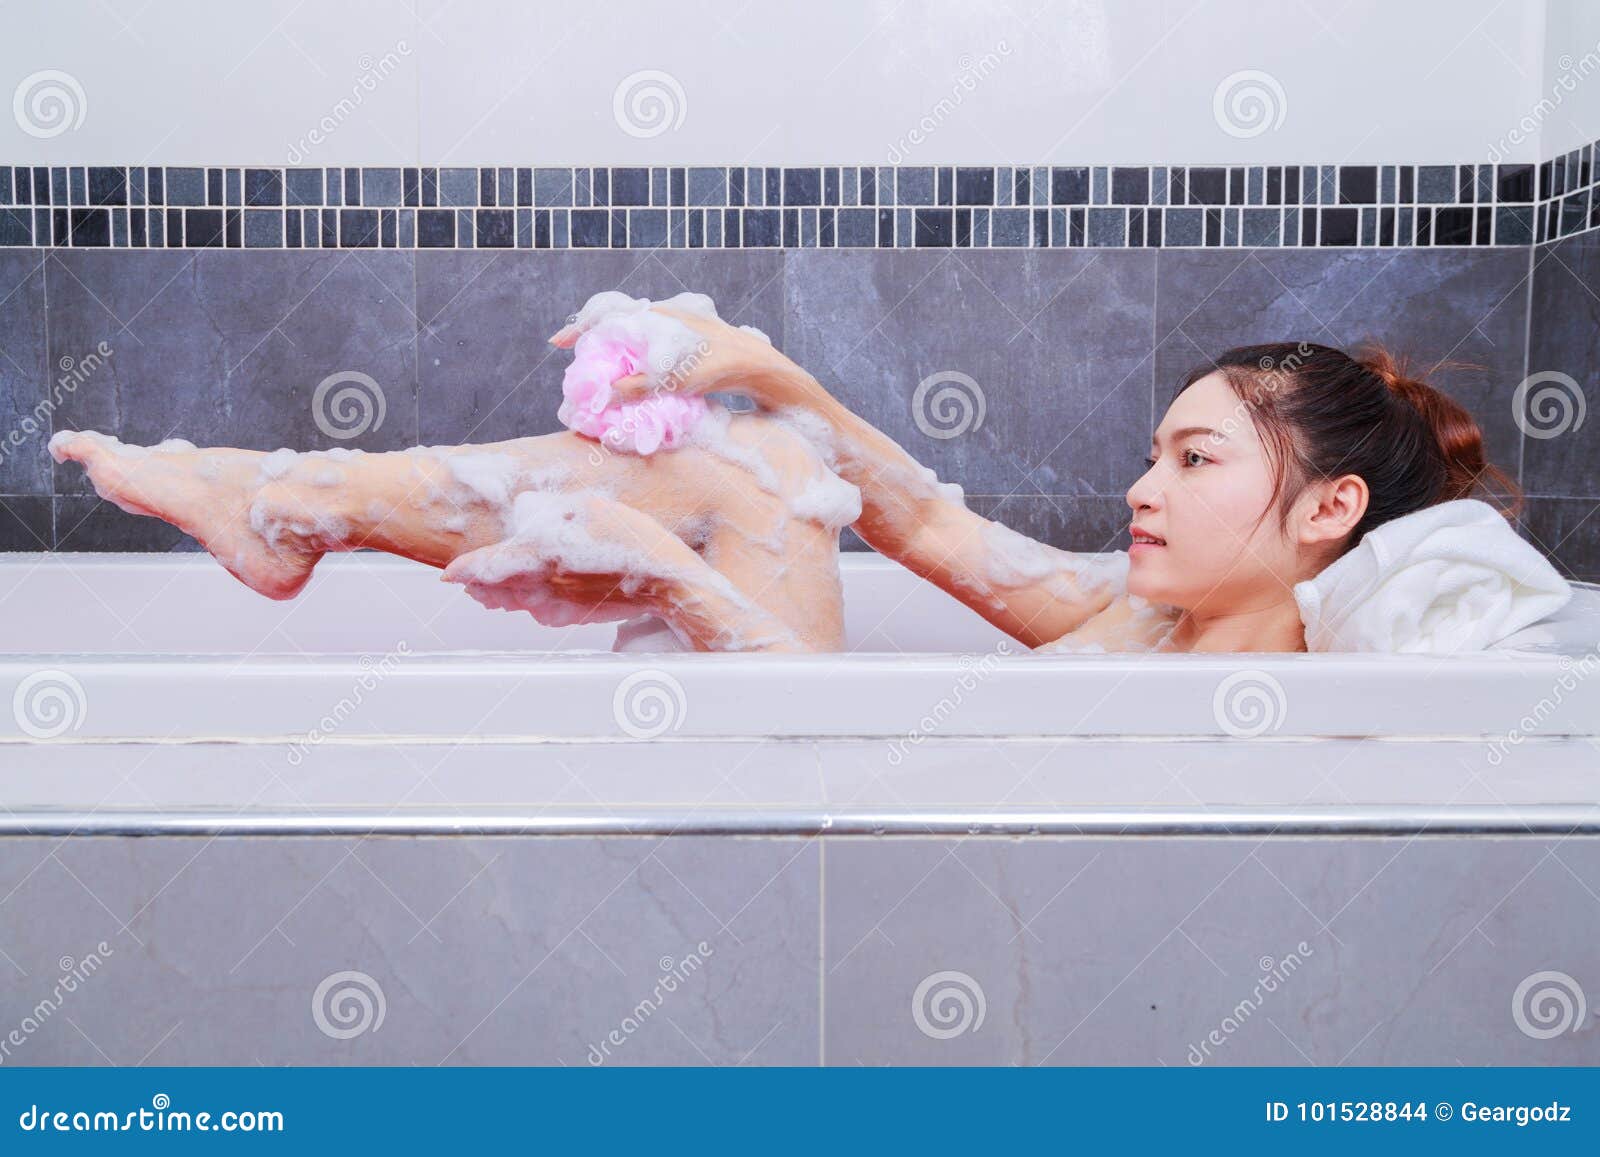 Покажи как женщины моются. Ванна для мытья ног. Ступни женщин в ванне. Для мытья ног в ванной. Помыть тело человека в ванной комнате.